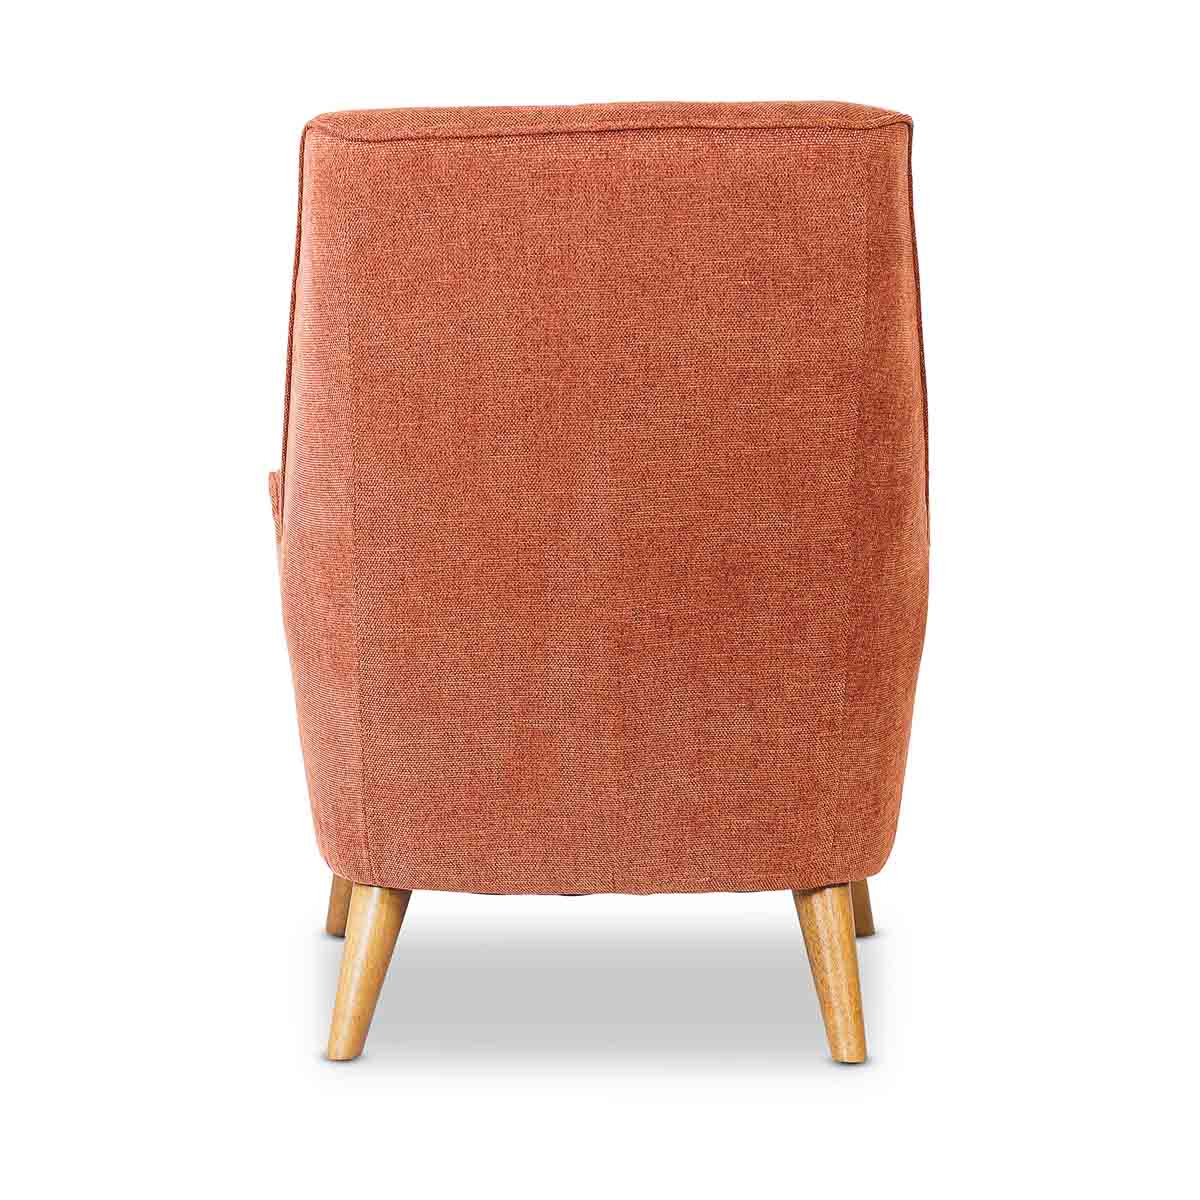 Lunar Fabric Chair